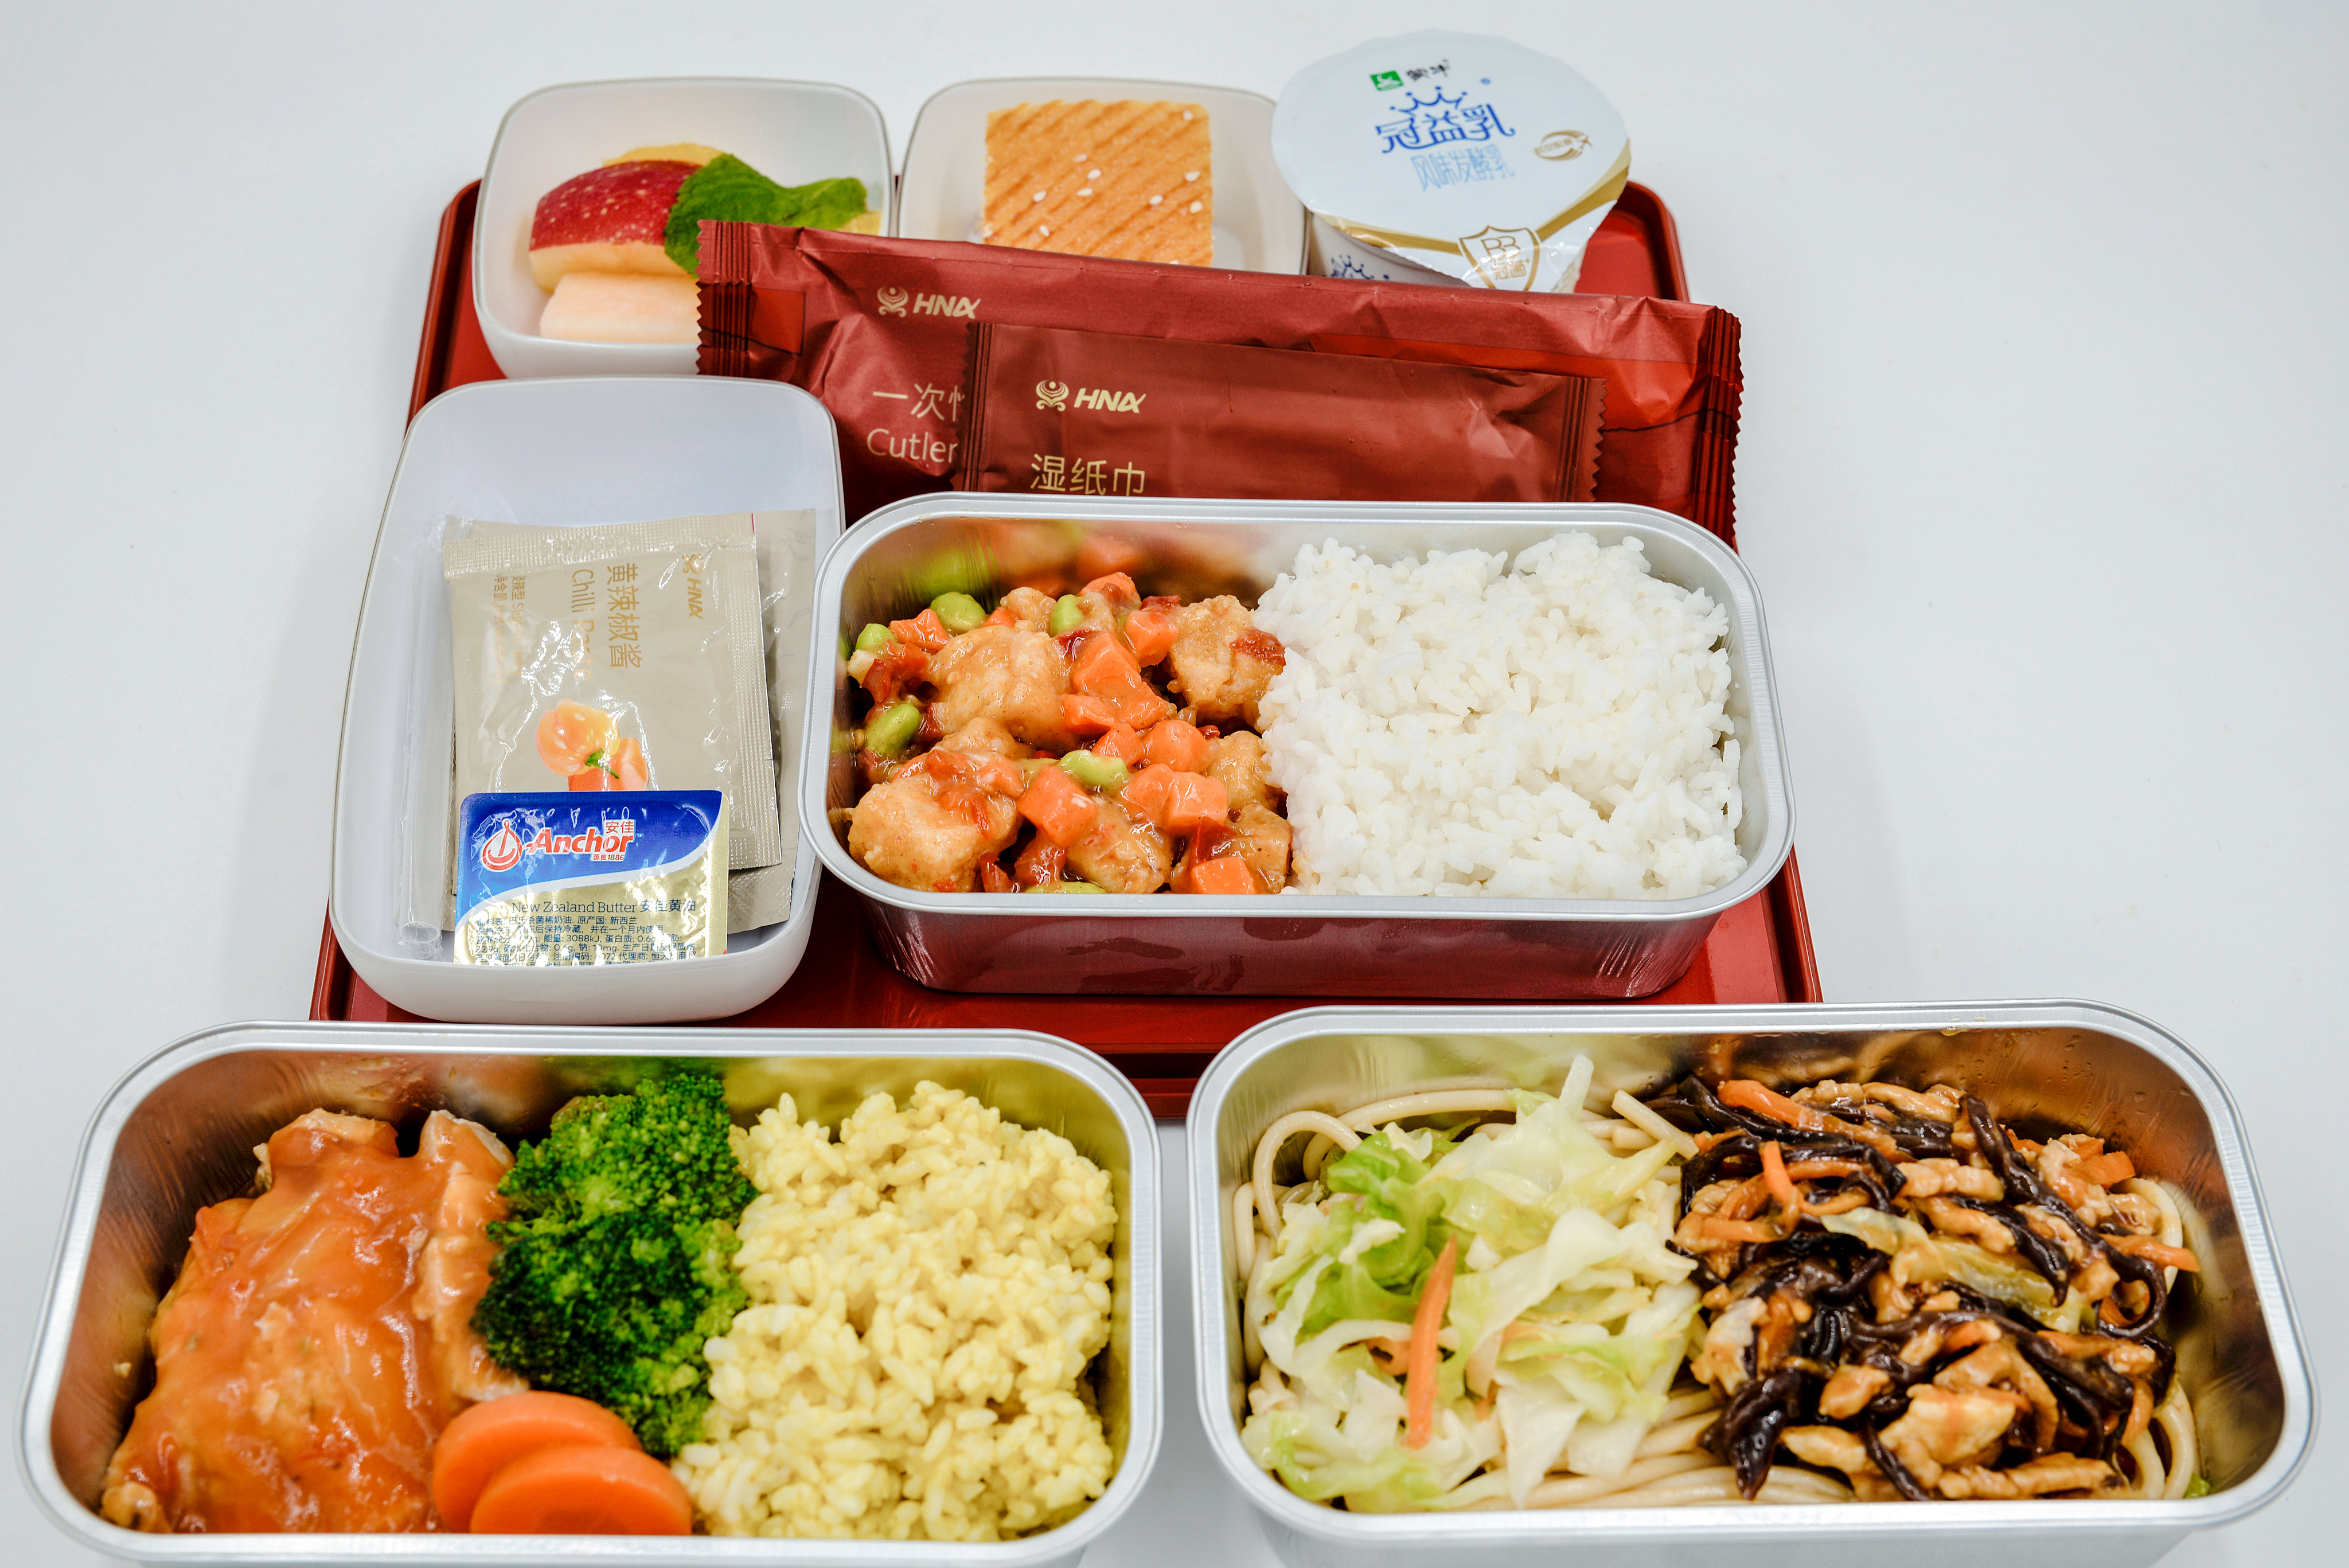 4月29日四川航空餐食主题直播 带你探秘空中美食 - 民用航空网